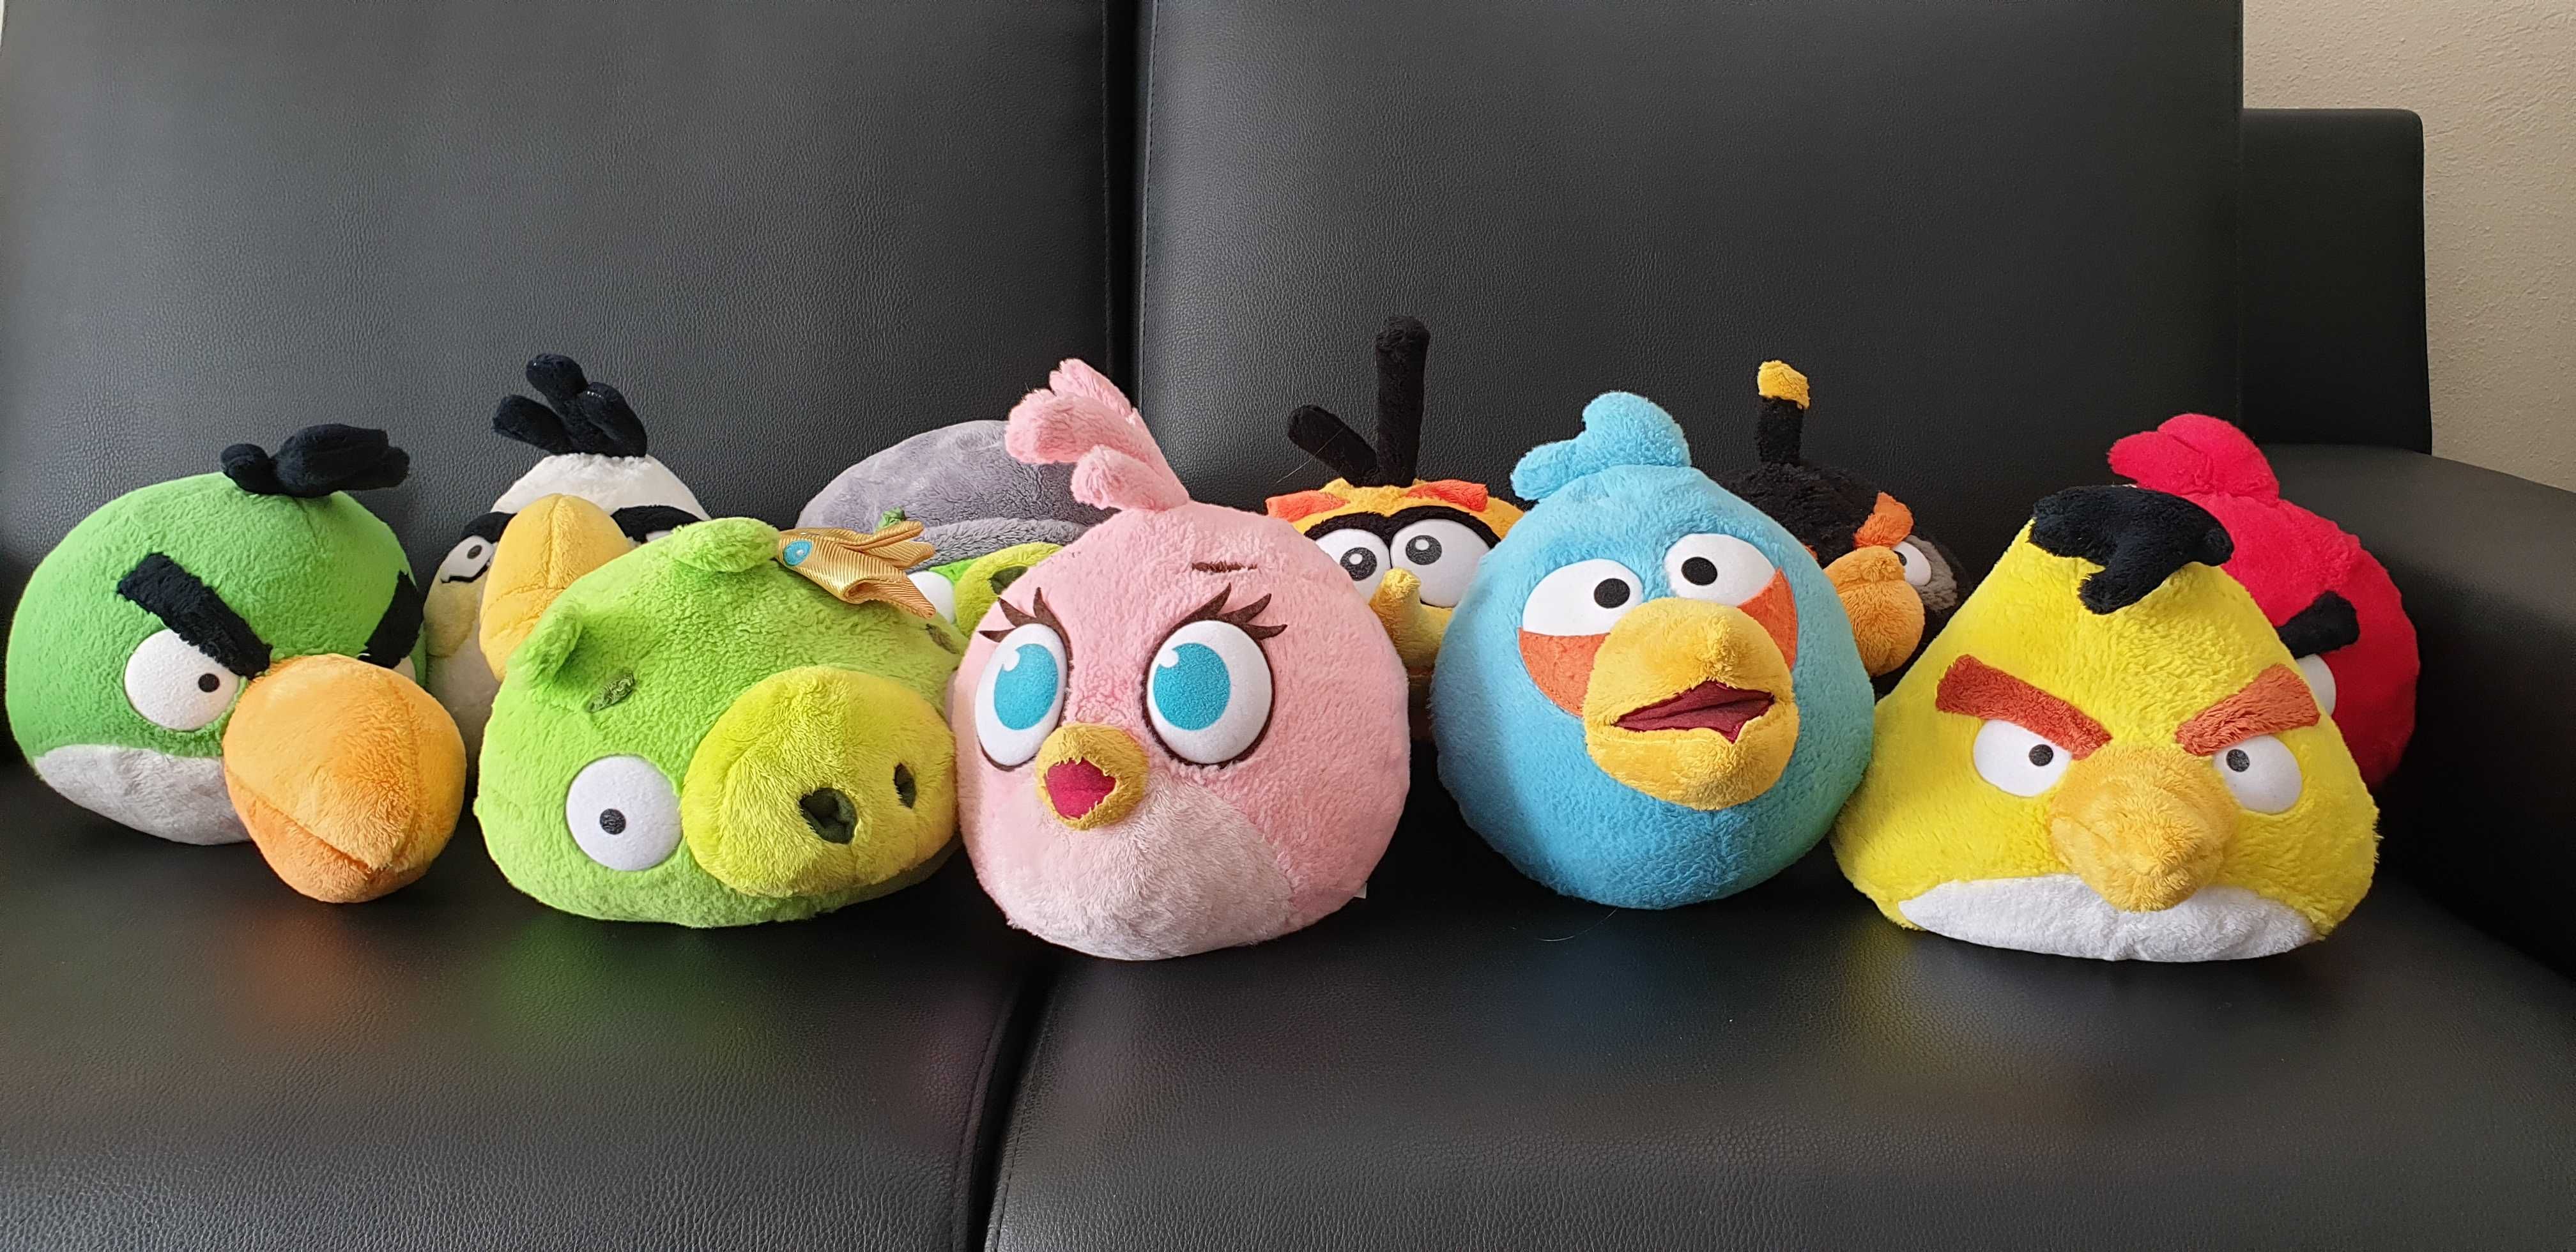 Coleção Completa Peluches Angry Birds - NOVOS